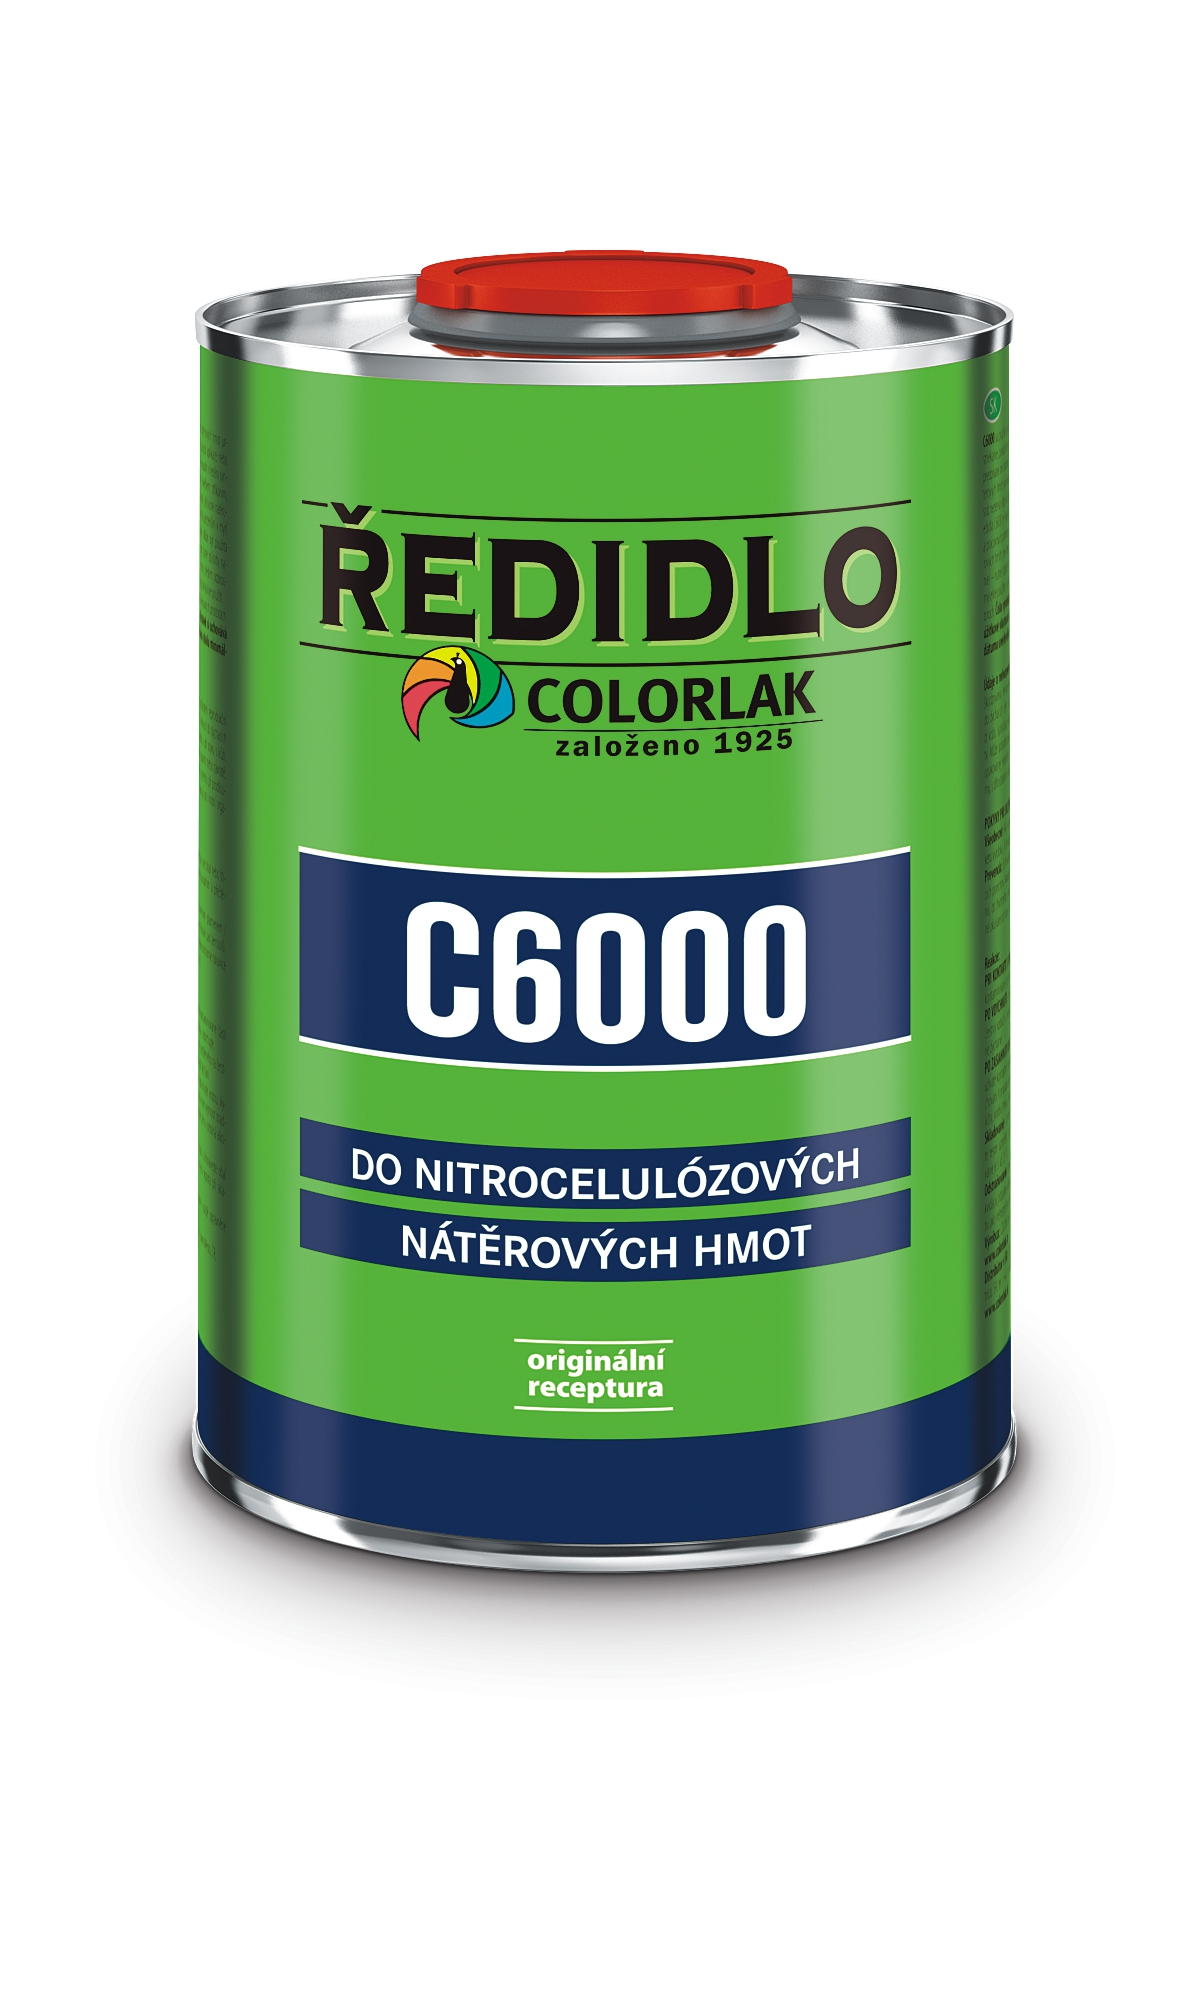 Colorlak Ředidlo C6000 4l